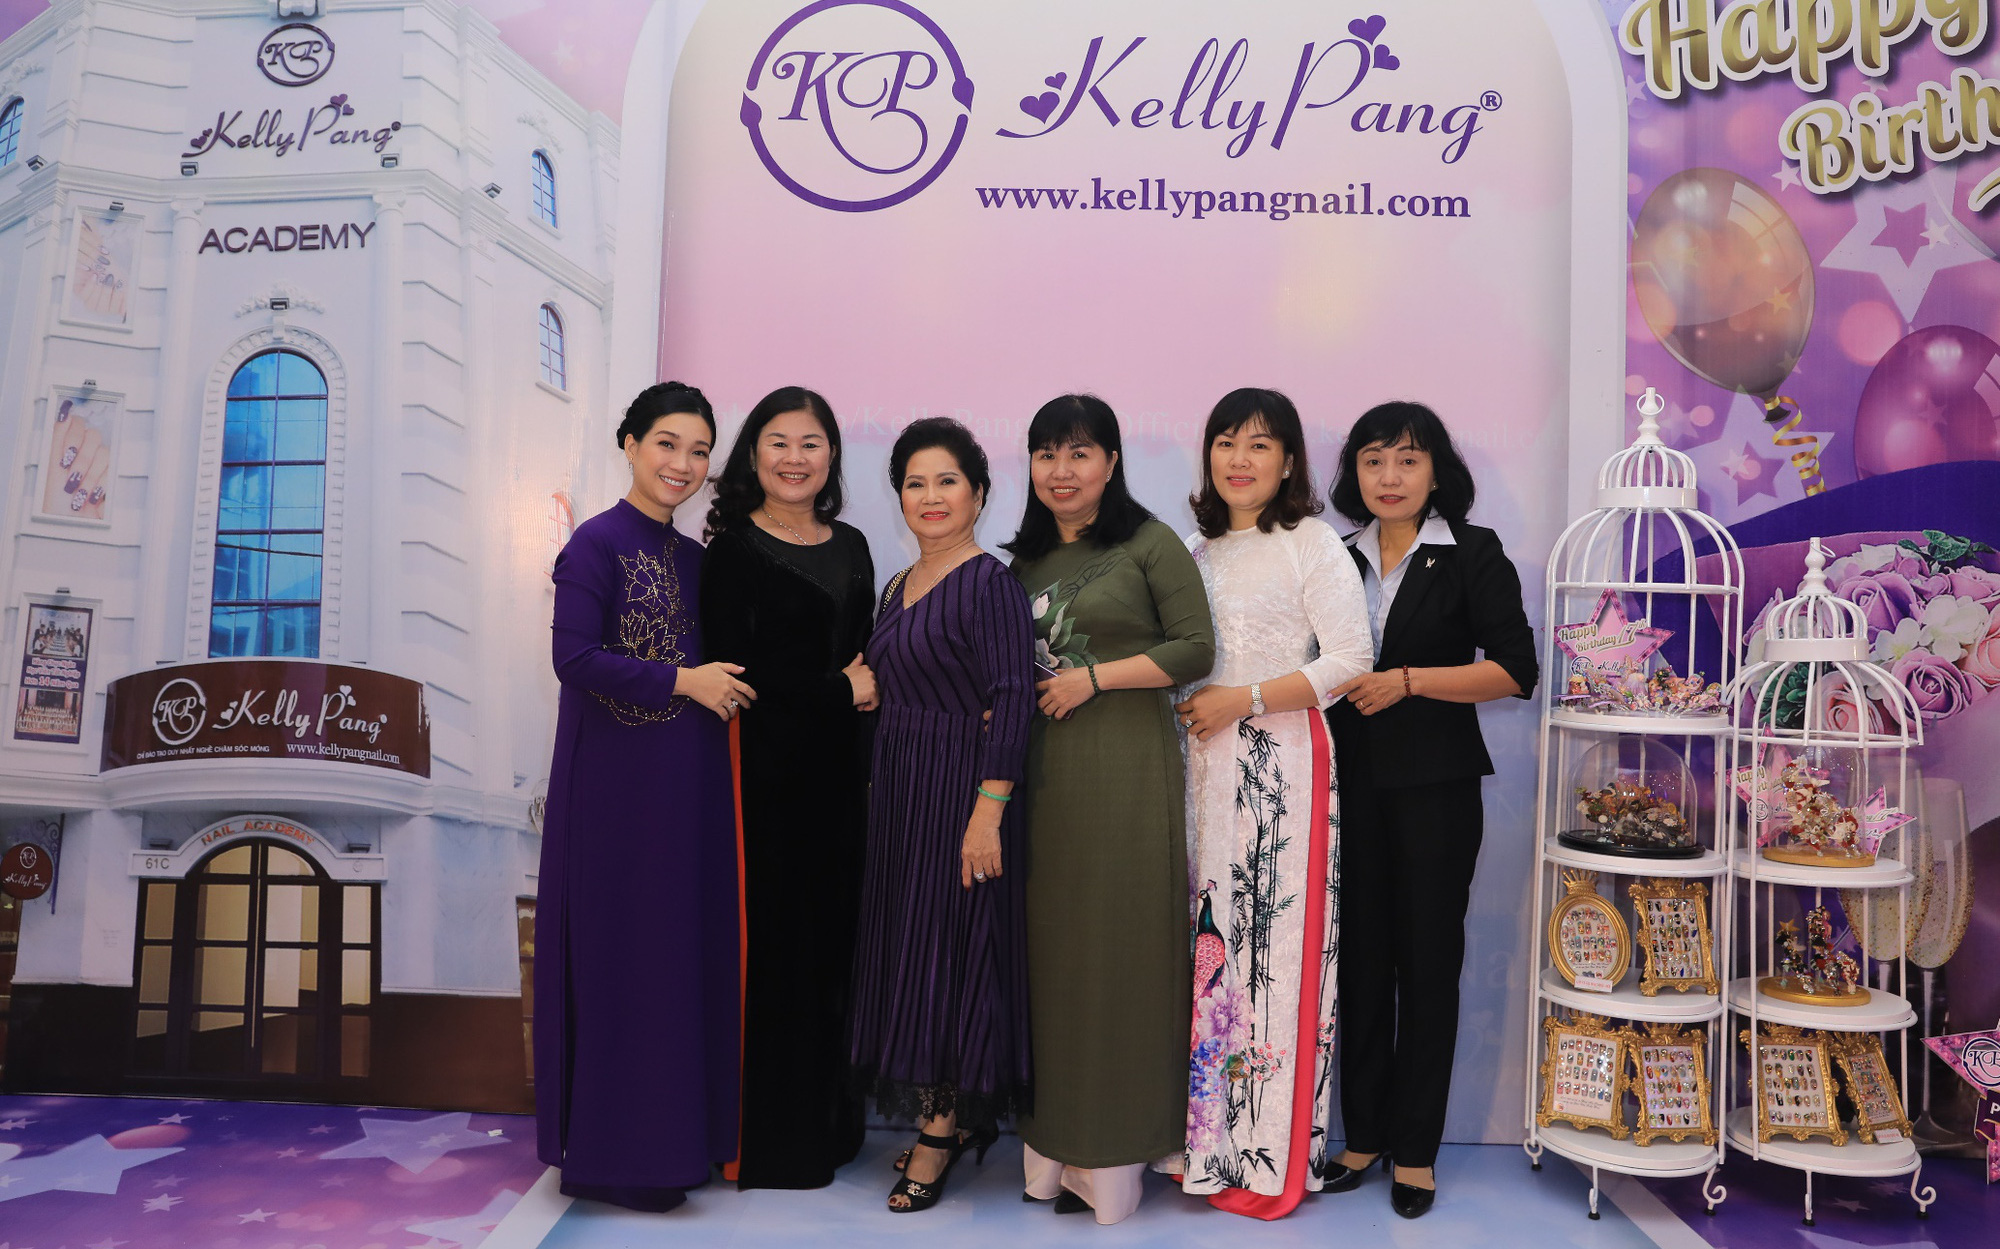 Câu chuyện thành công của Kelly Pang truyền cảm hứng với những ai muốn khởi nghiệp cùng nghề nails